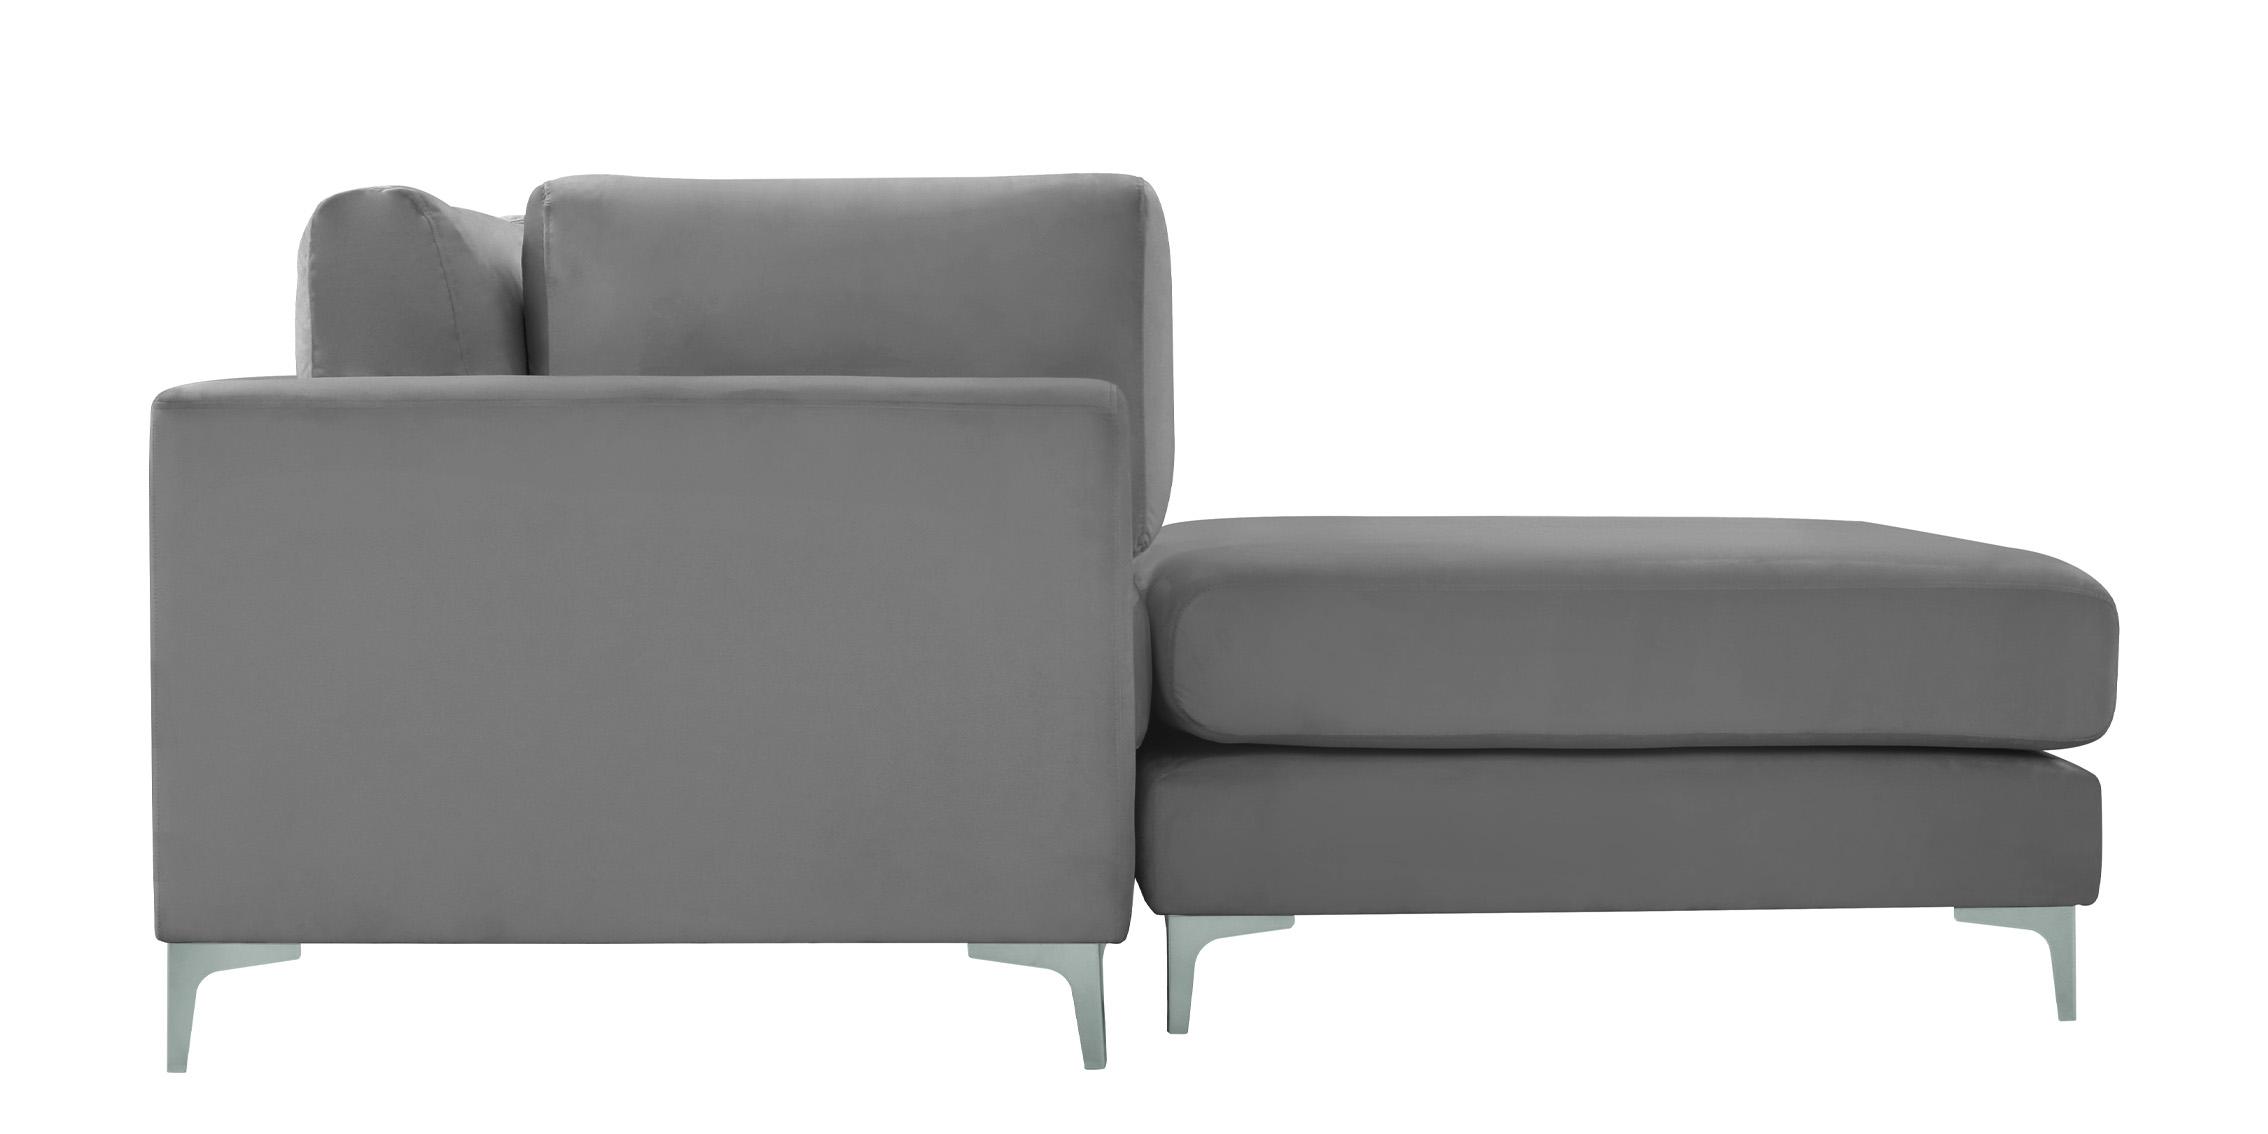 

    
605Grey-Sec5A Meridian Furniture Modular Sectional Sofa
